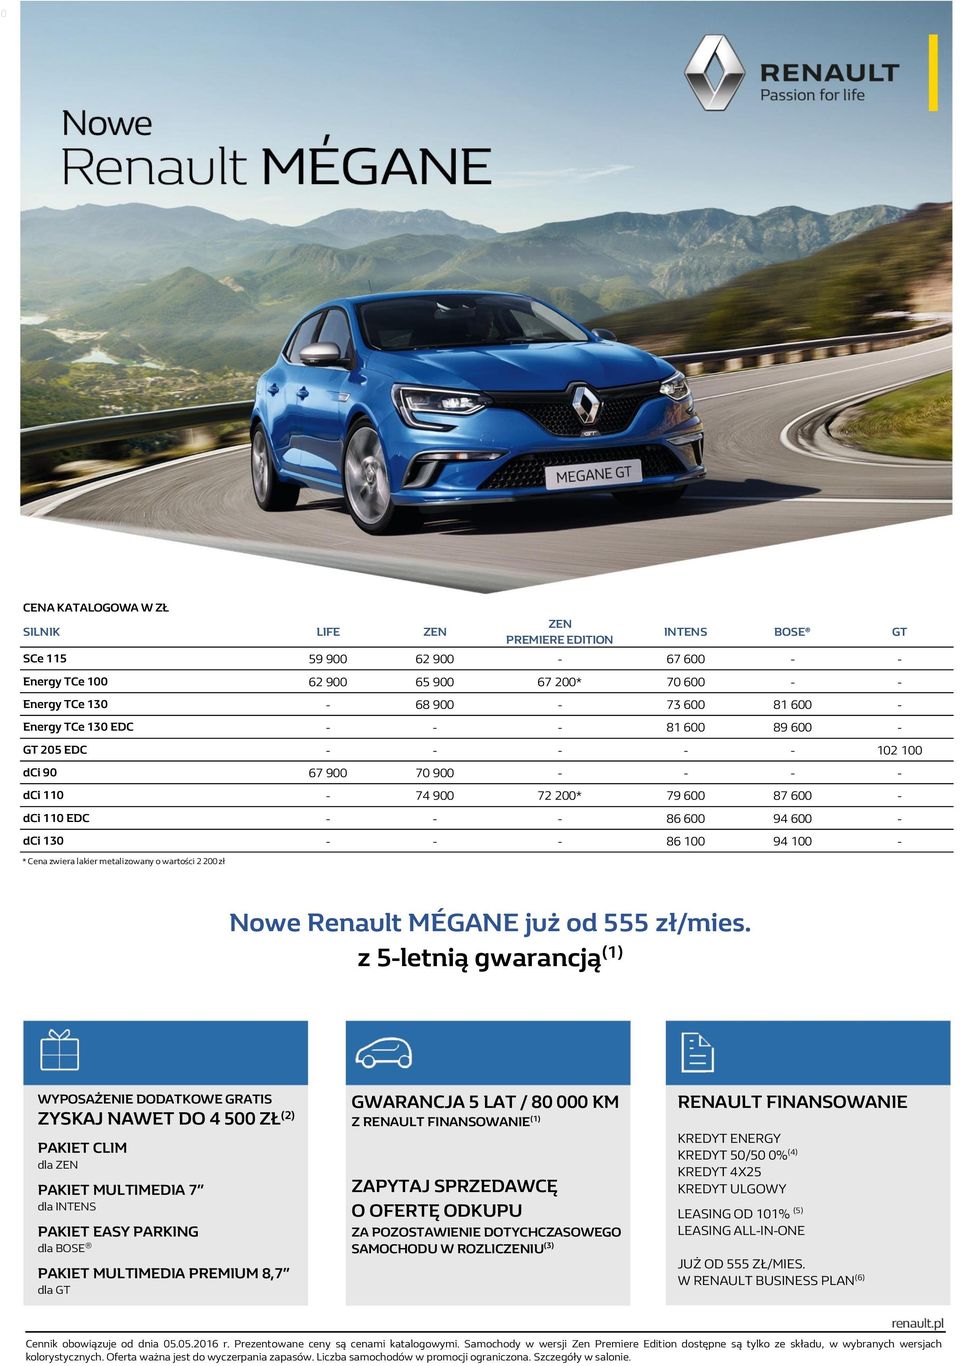 - * Cena zwiera lakier metalizowany o wartości 2 200 zł Nowe Renault MÉGANE już od 555 zł/mies.